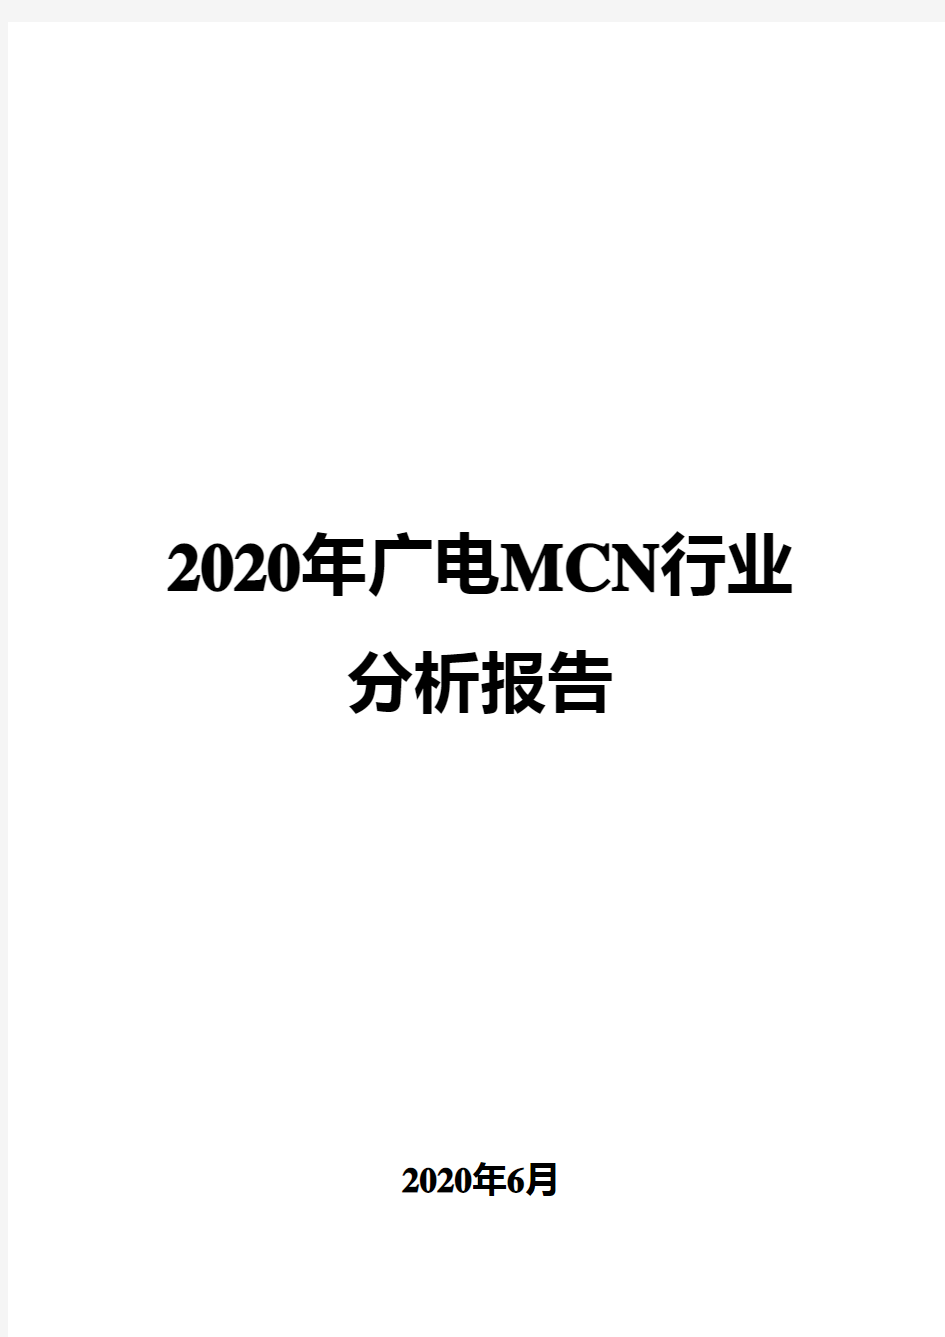 2020年广电MCN行业分析报告